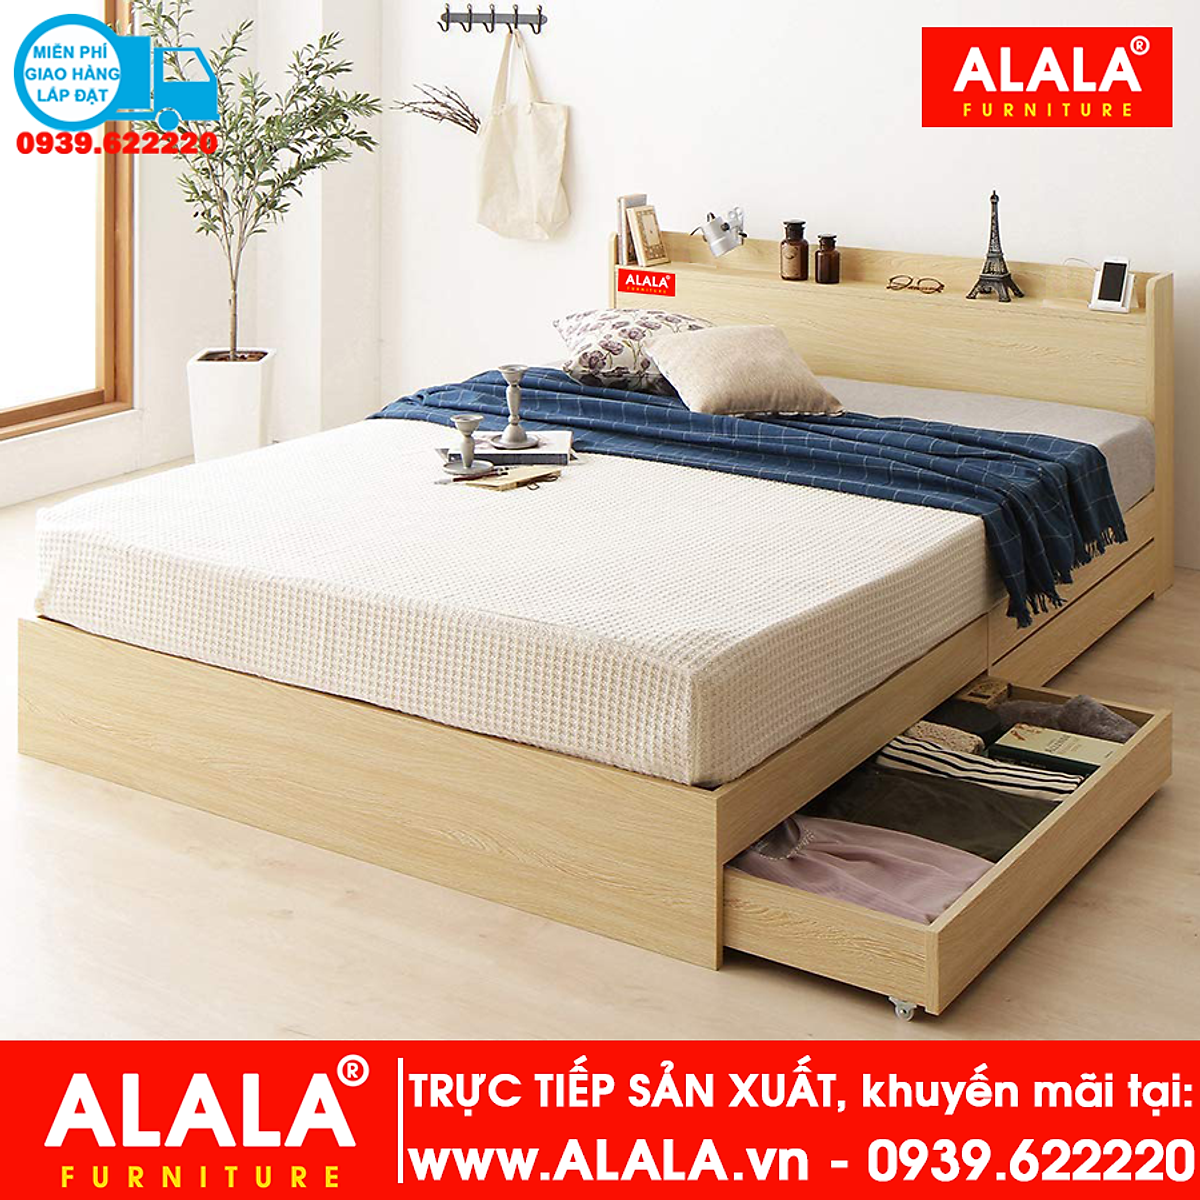 Giường ngủ ALALA01 (1m4x2m) gỗ HMR chống nước - www.ALALA.vn® - Za ...